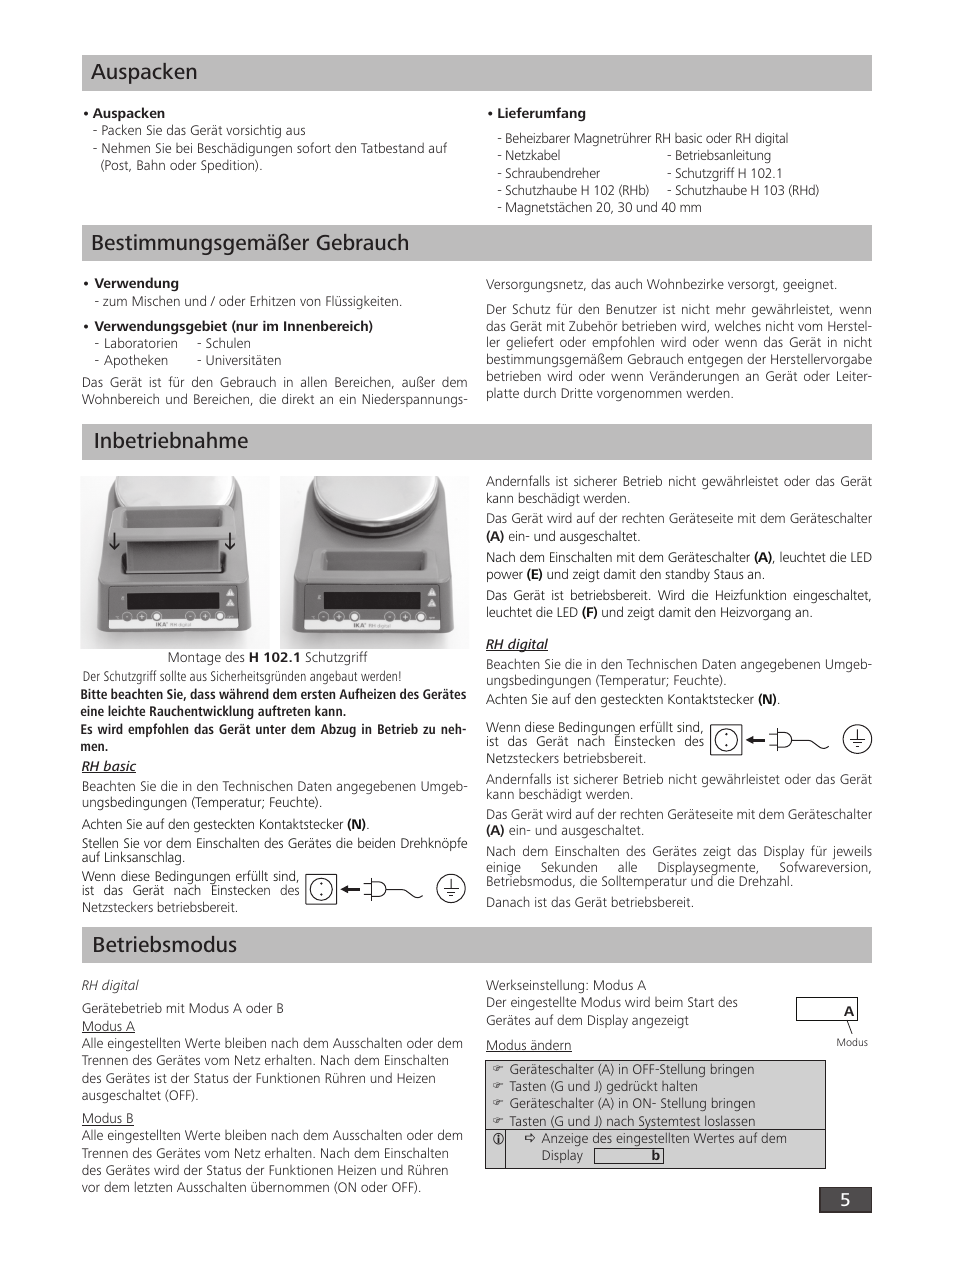 Auspacken, Bestimmungsgemäßer gebrauch, Inbetriebnahme | Betriebsmodus | IKA RH digital User Manual | Page 5 / 52